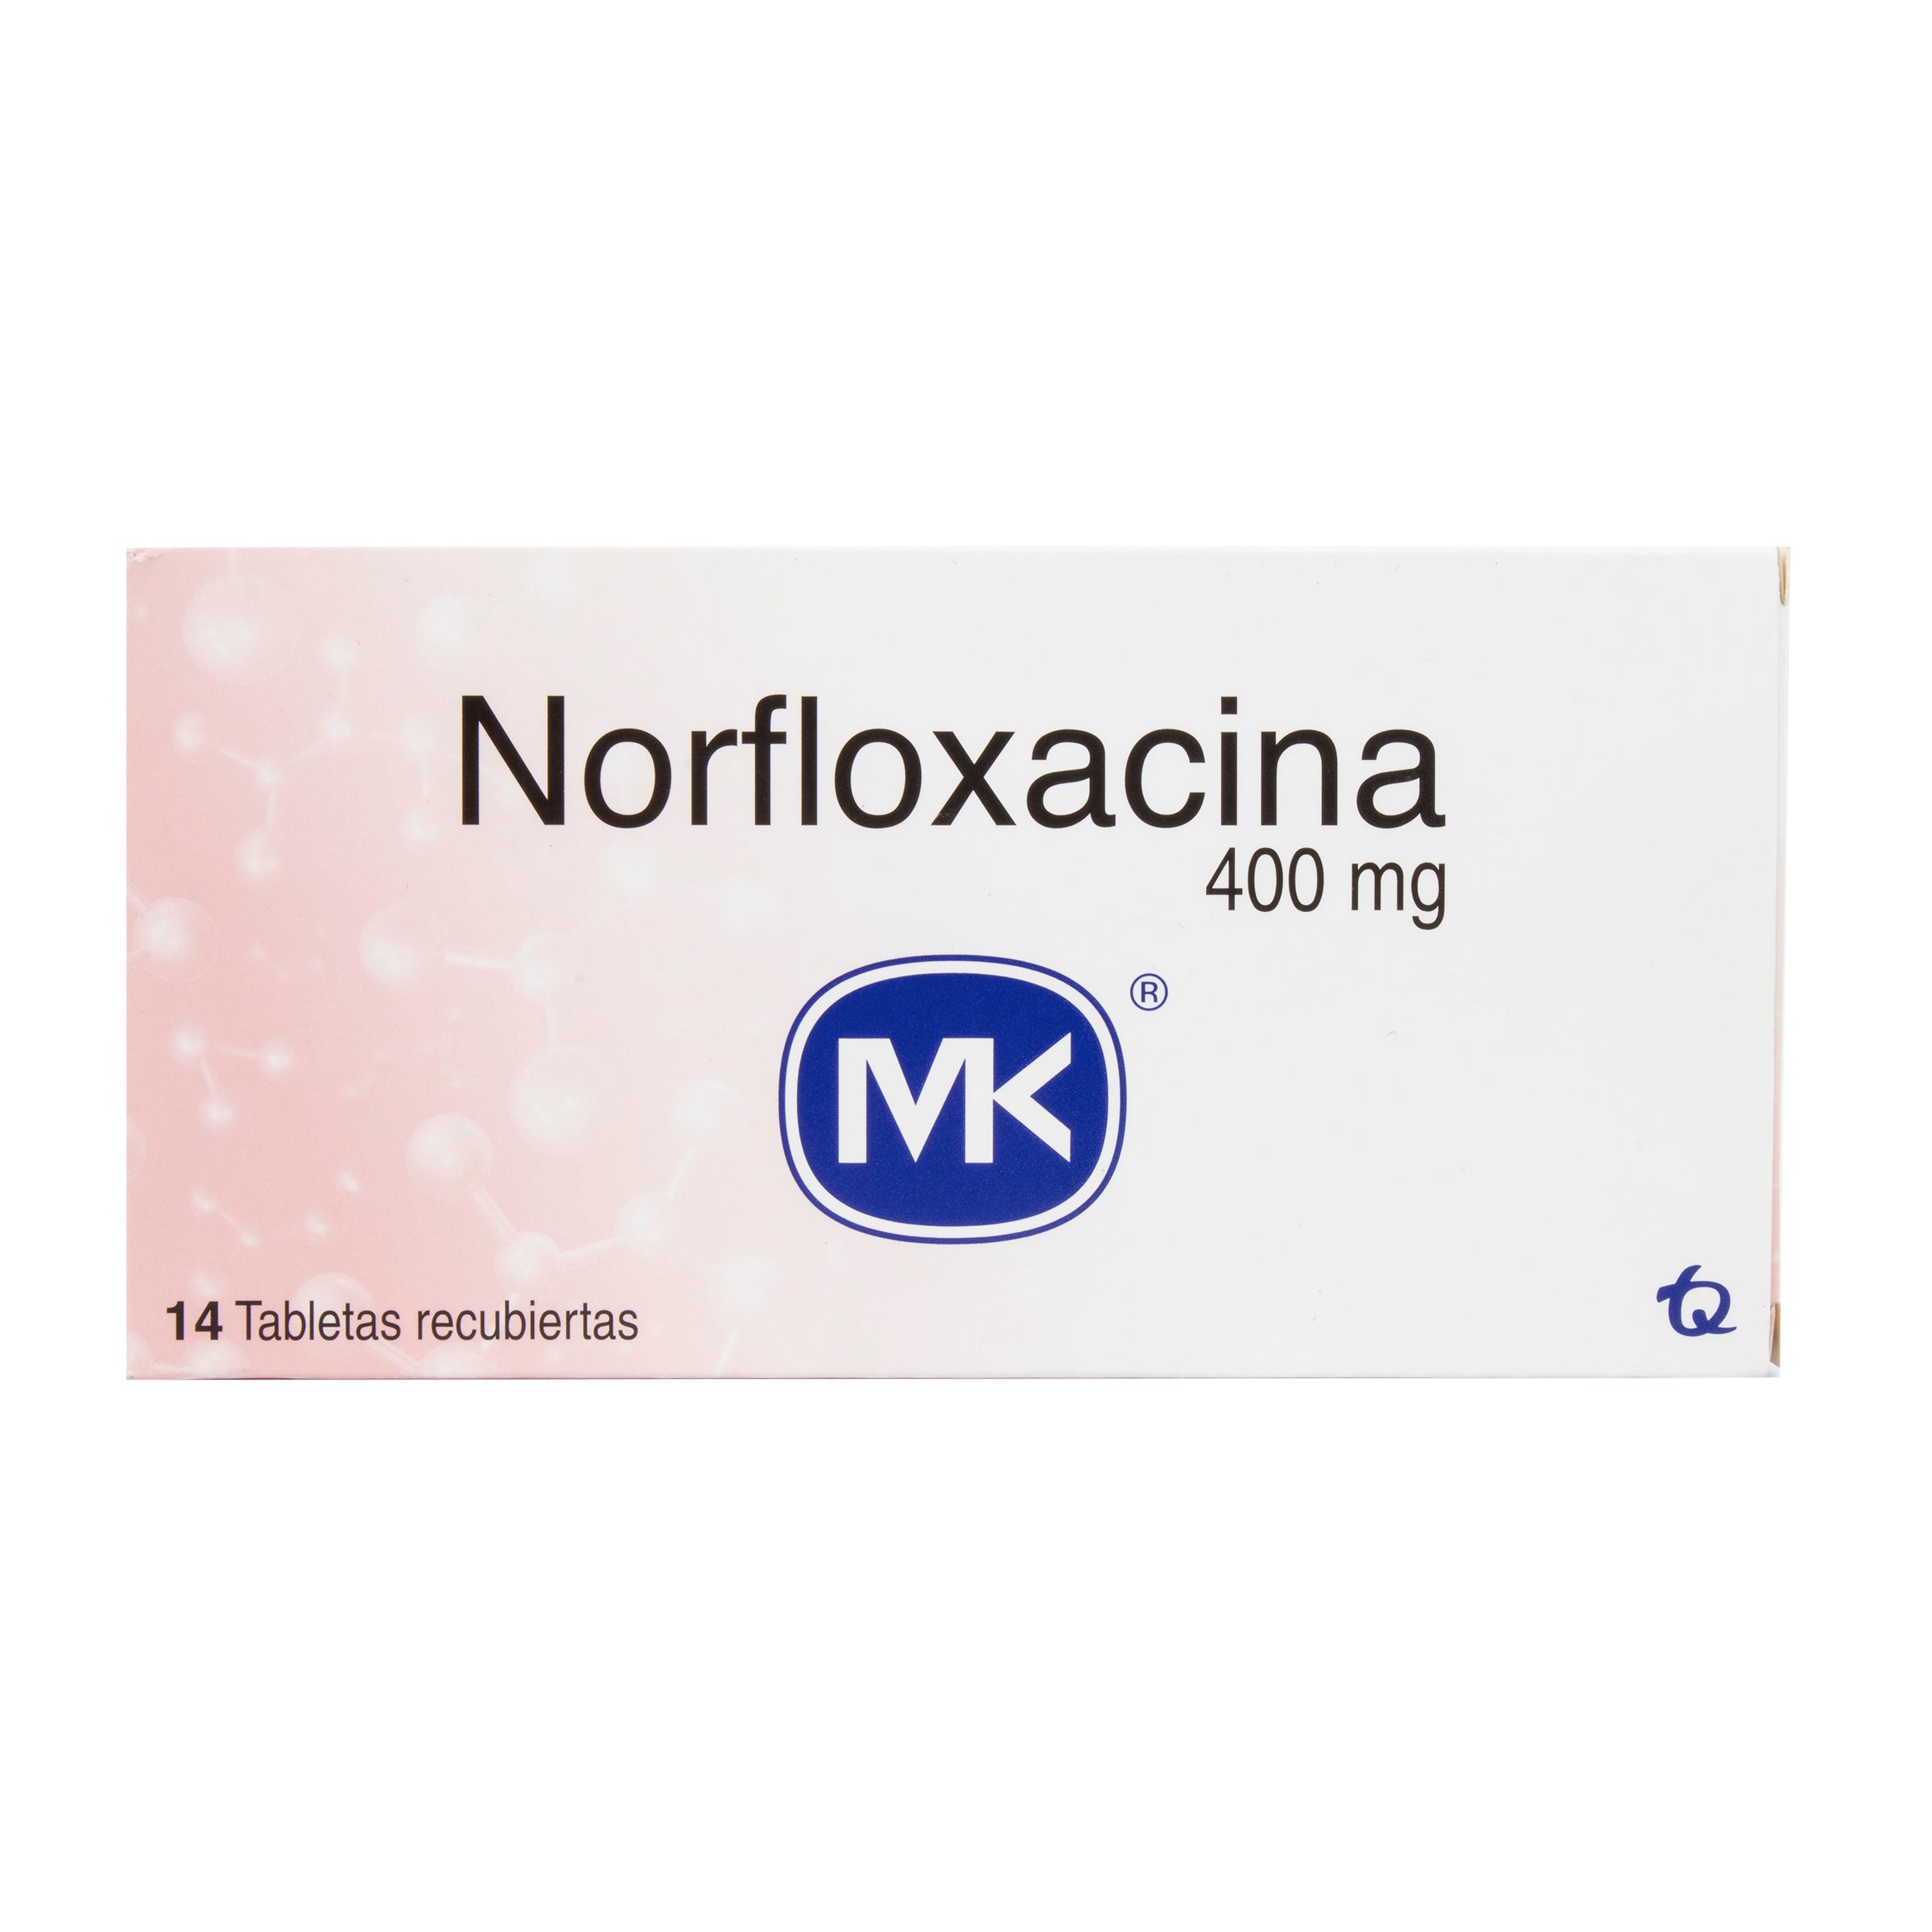 NORFLOXACINA 400 MG 14 TABLETAS MK